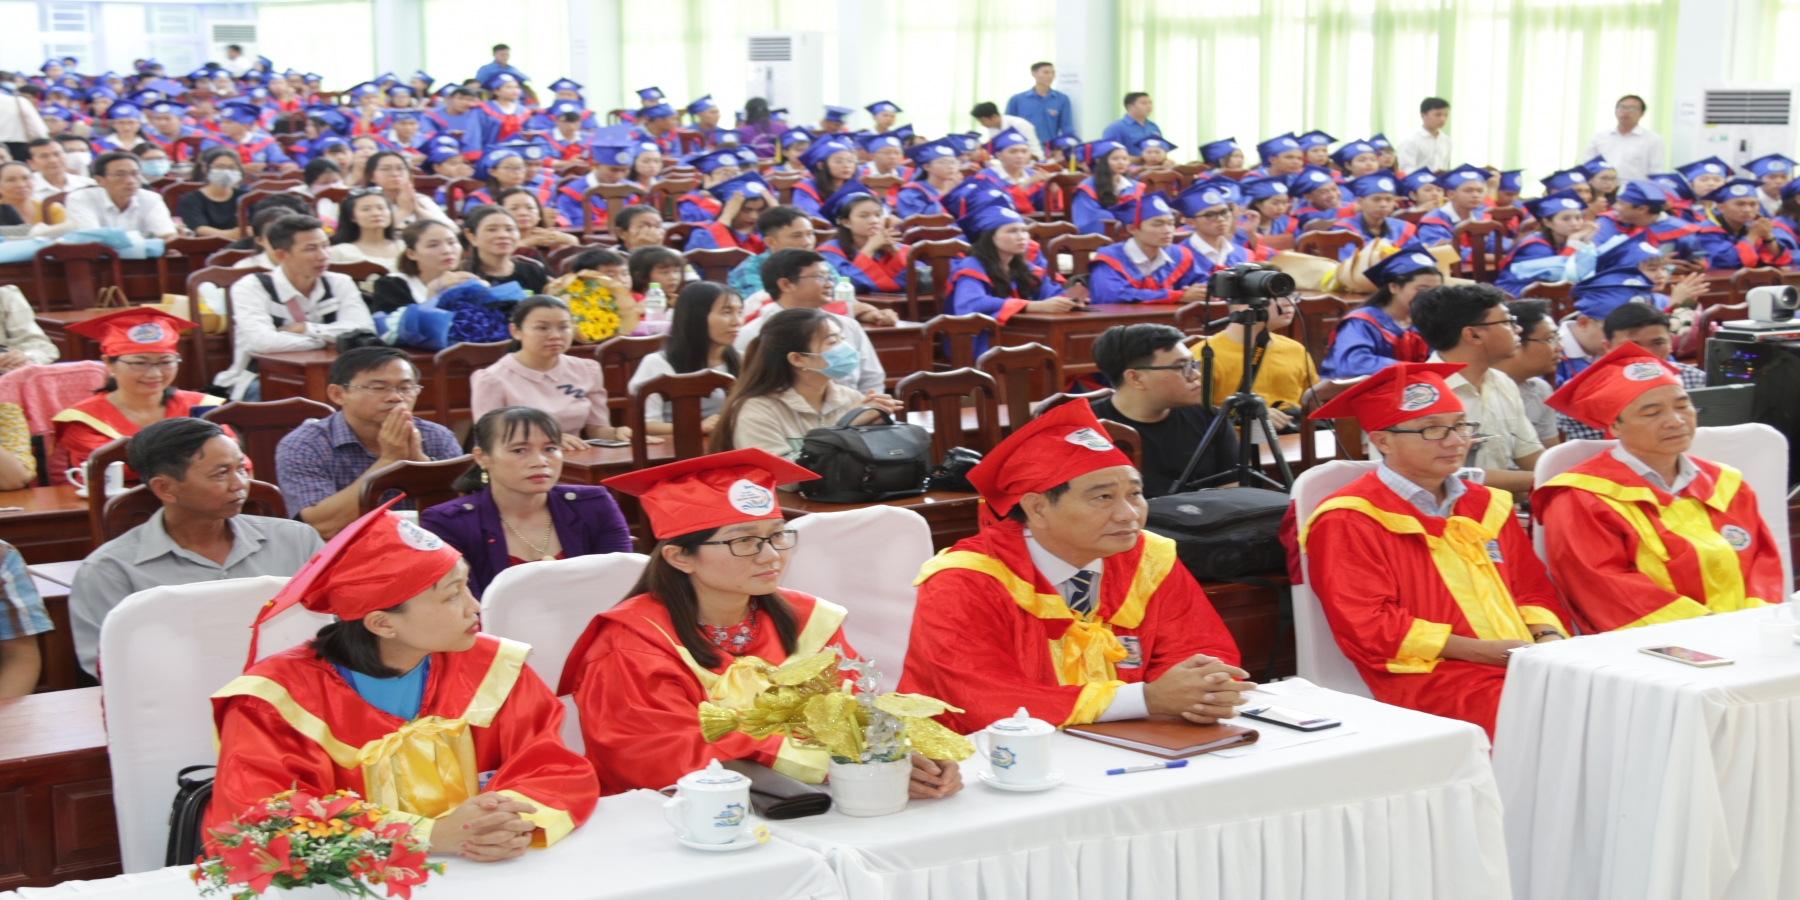 Thêm 418 cử nhân, kỹ sư Trường Đại học Kiên Giang nhận bằng tốt nghiệp cao đẳng, đại học